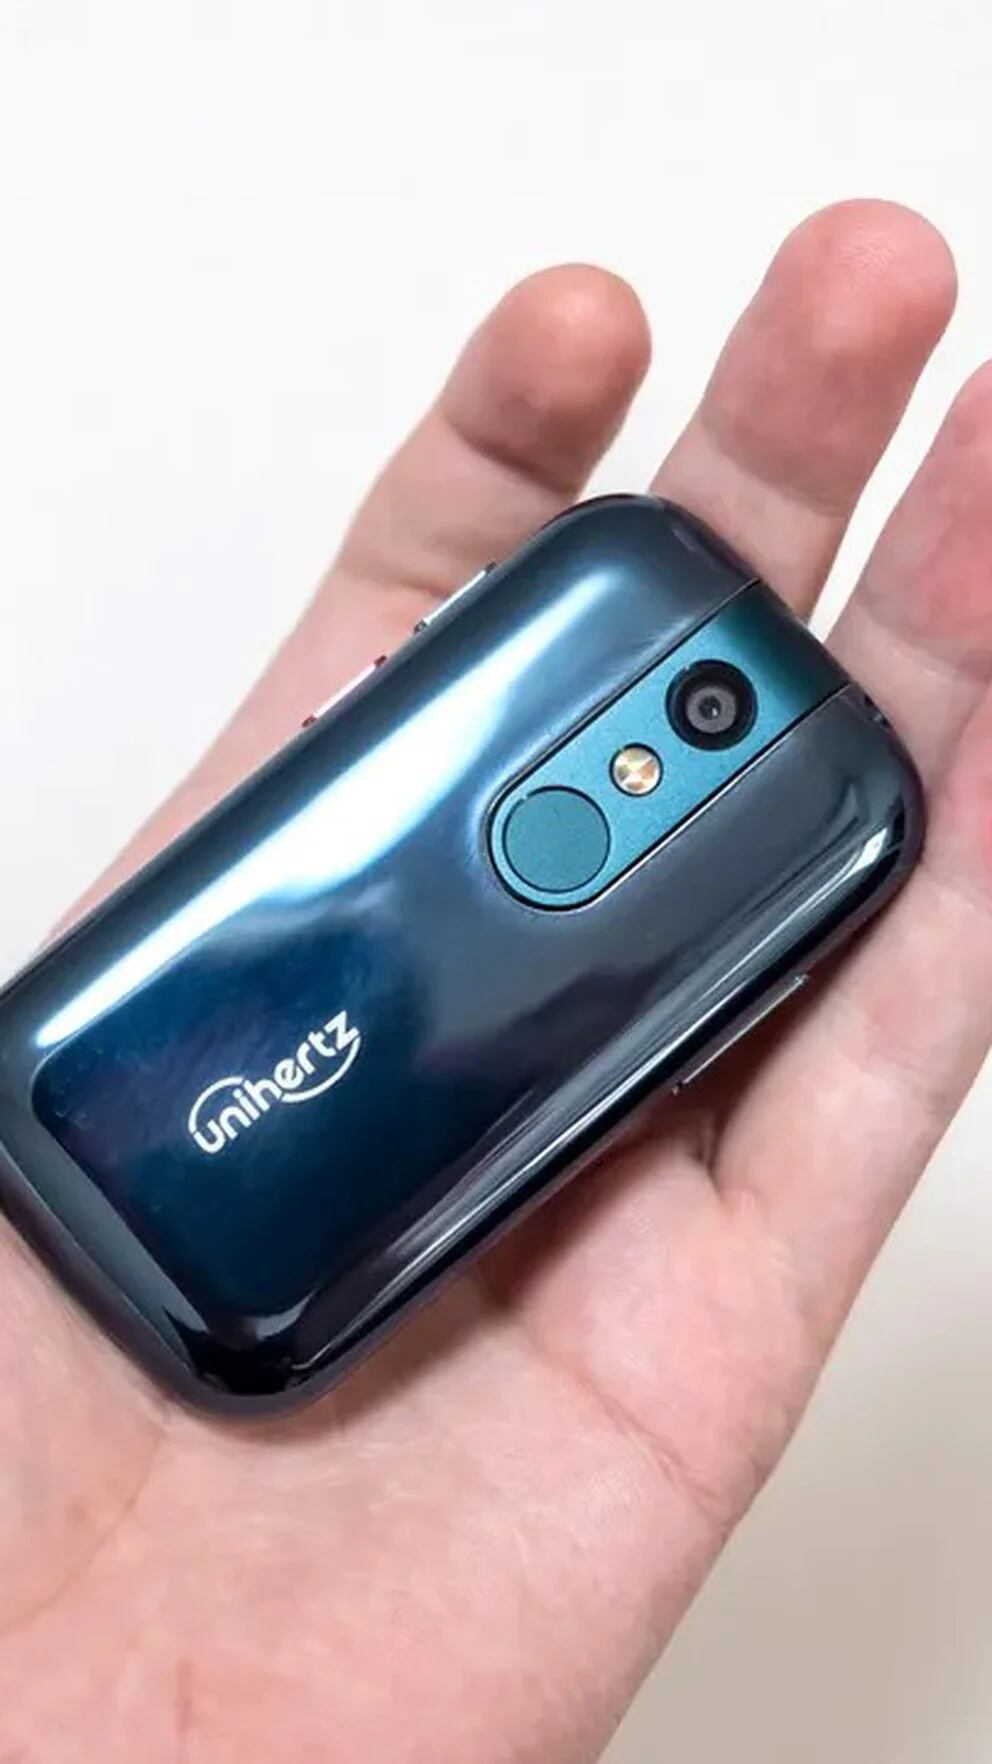 Presentaron el celular más pequeño y liviano del mundo